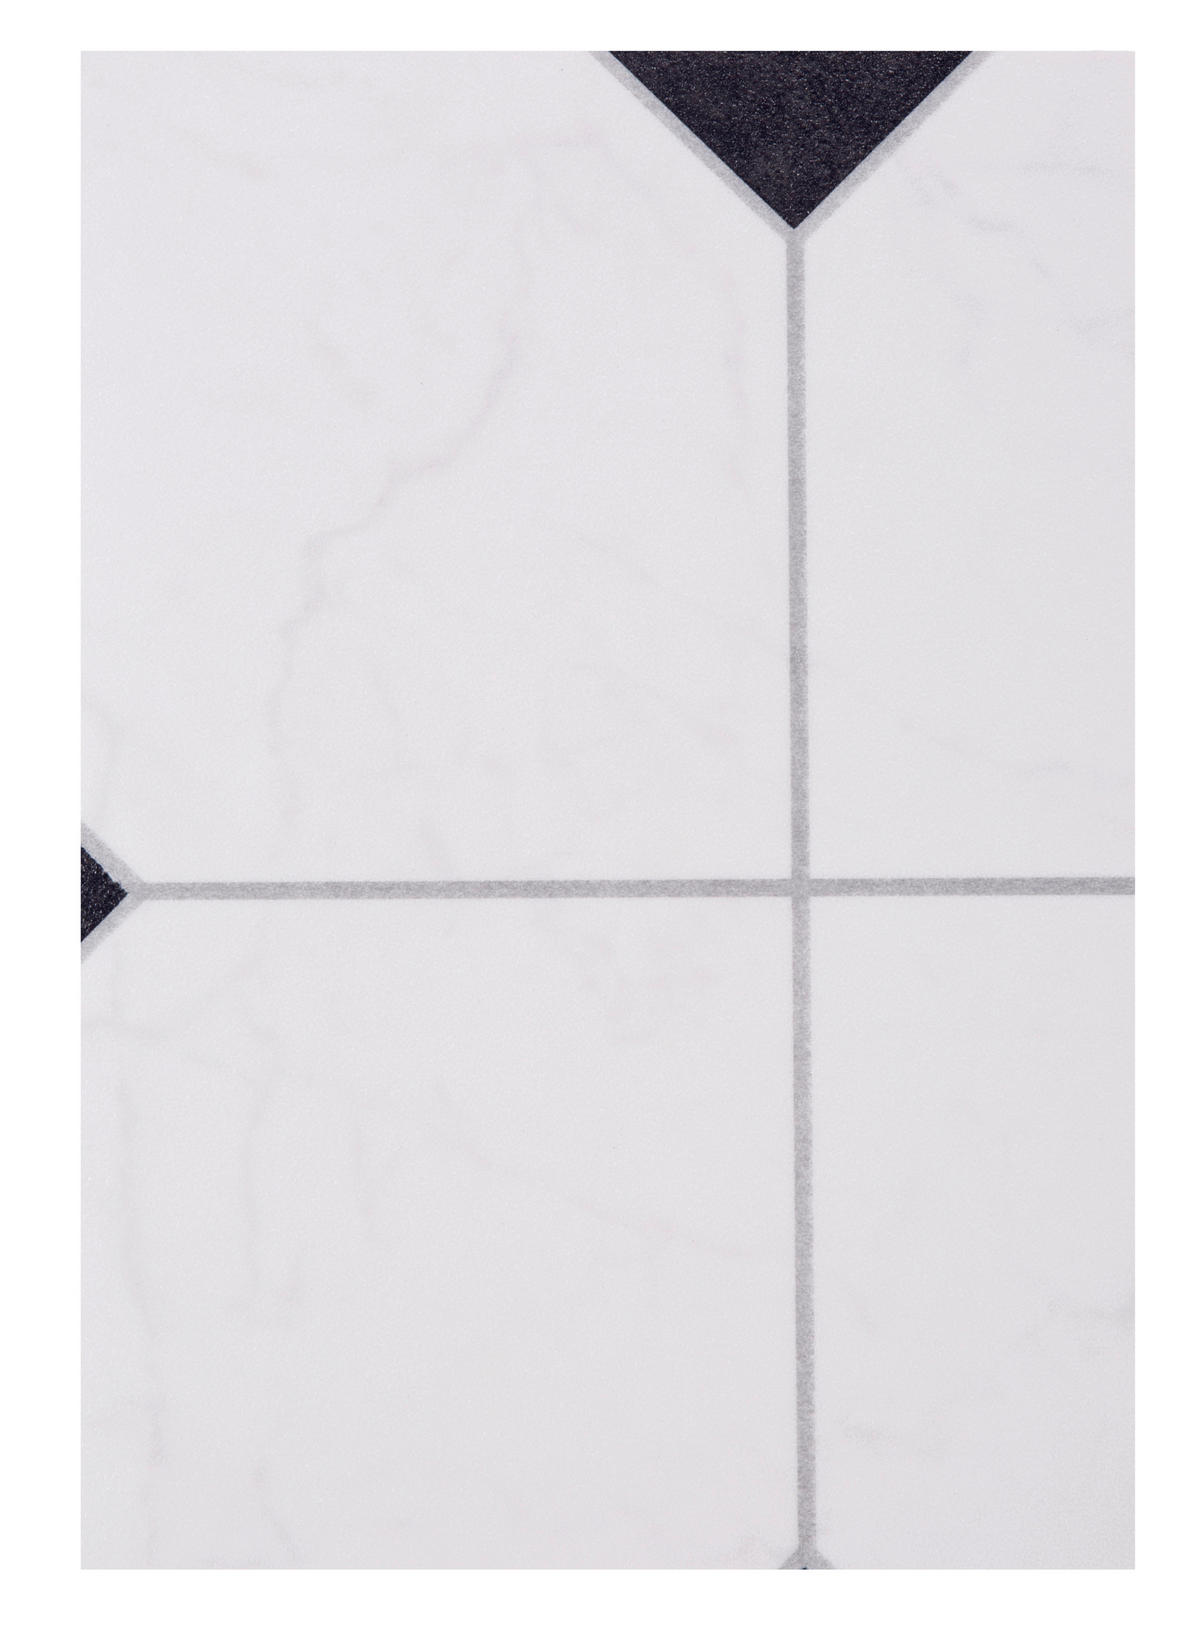 Vinylboden pro m² Strong Fliese weiß B: ca. 300 cm Strong - weiß/schwarz (300,00/200,00cm)